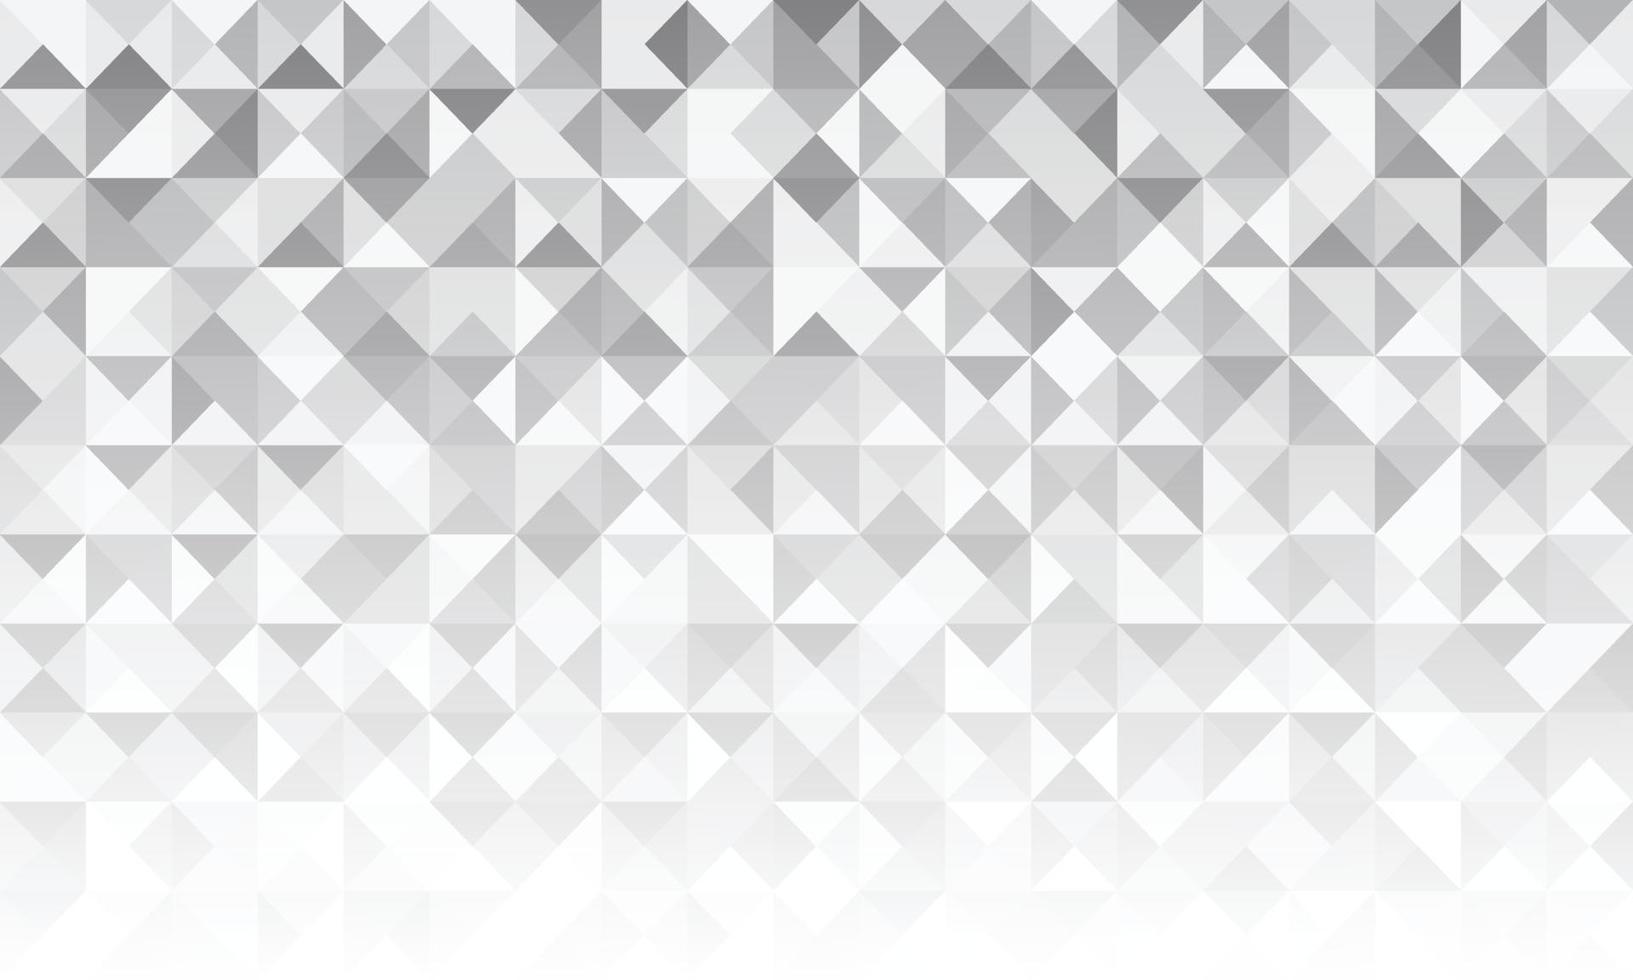 padrão retrô abstrato de formas geométricas. cenário de mosaico gradiente cinza. fundo triangular geométrico hipster, vetor